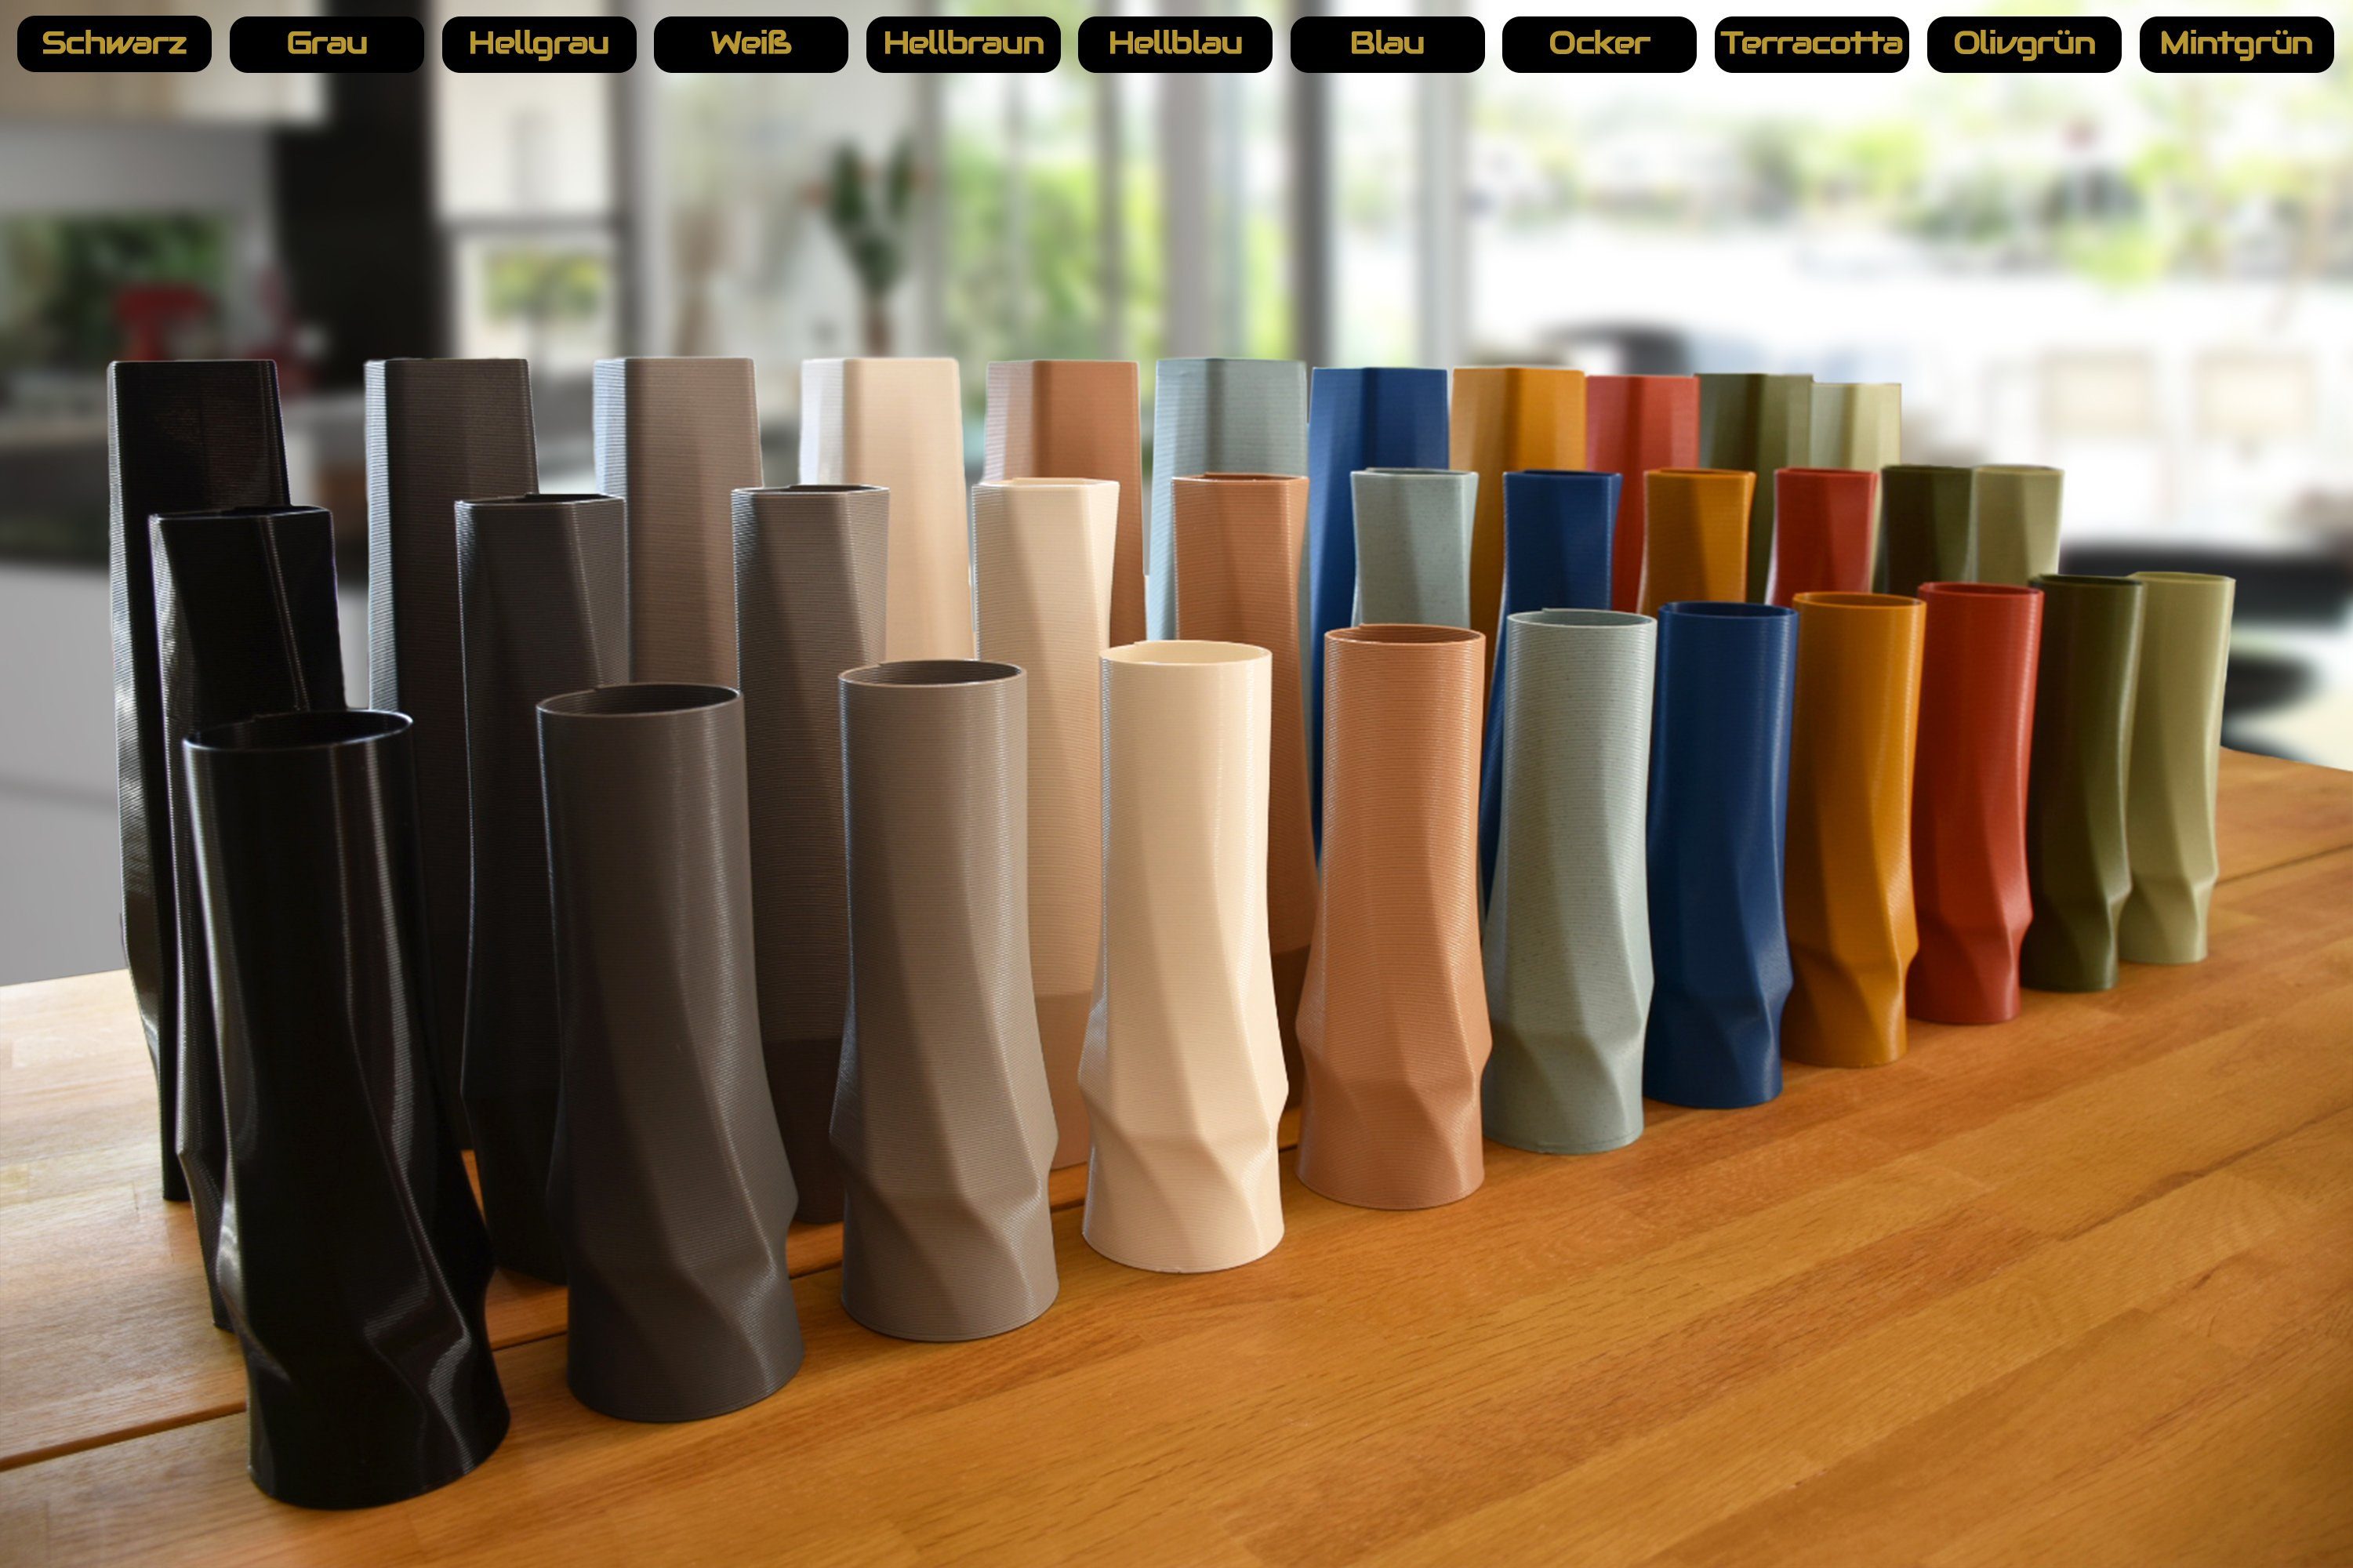 Shapes - the 3D-Druck 100% 1 viele Dekovase Materials Wasserdicht; circle des Terracotta Farben, (basic), Decorations Vasen, - vase (rot) innerhalb (Rillung) Struktur Leichte 3D Vase), (Einzelmodell